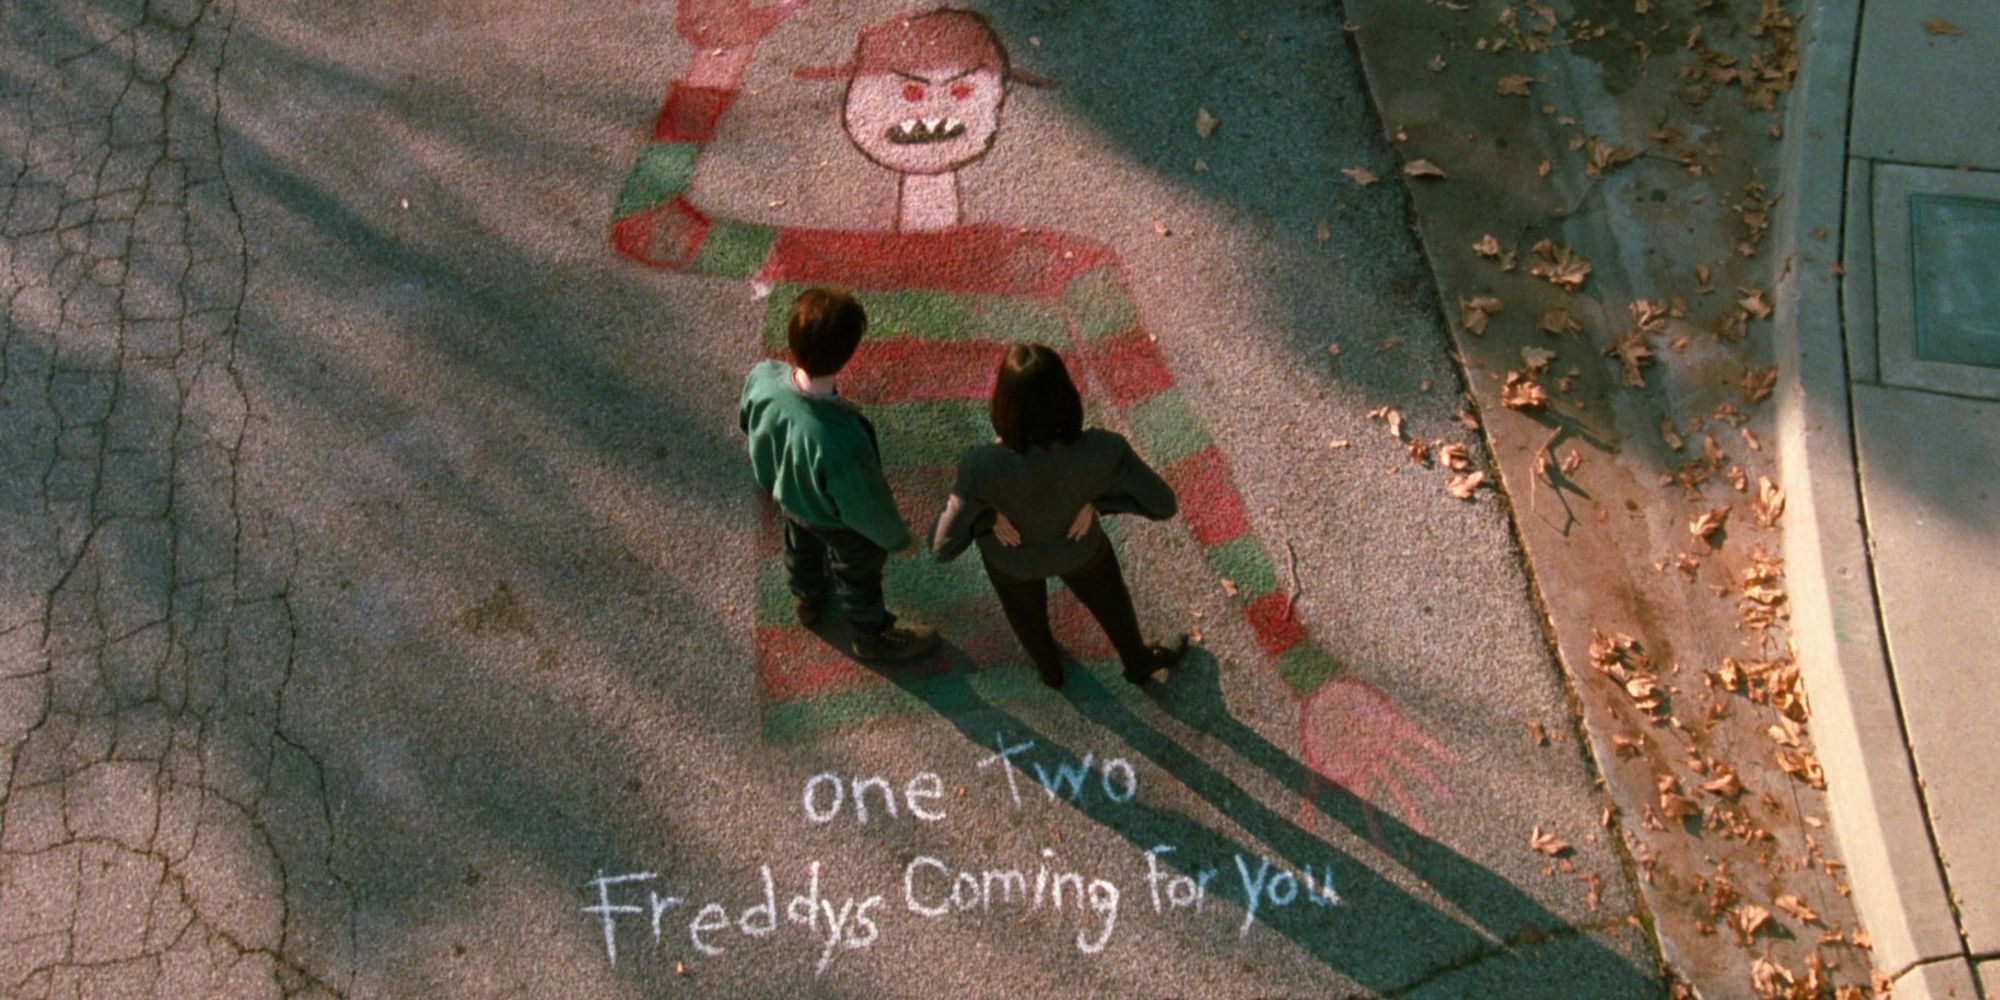 Deux personnes debout sur un dessin à la craie de Freddy Krueger.